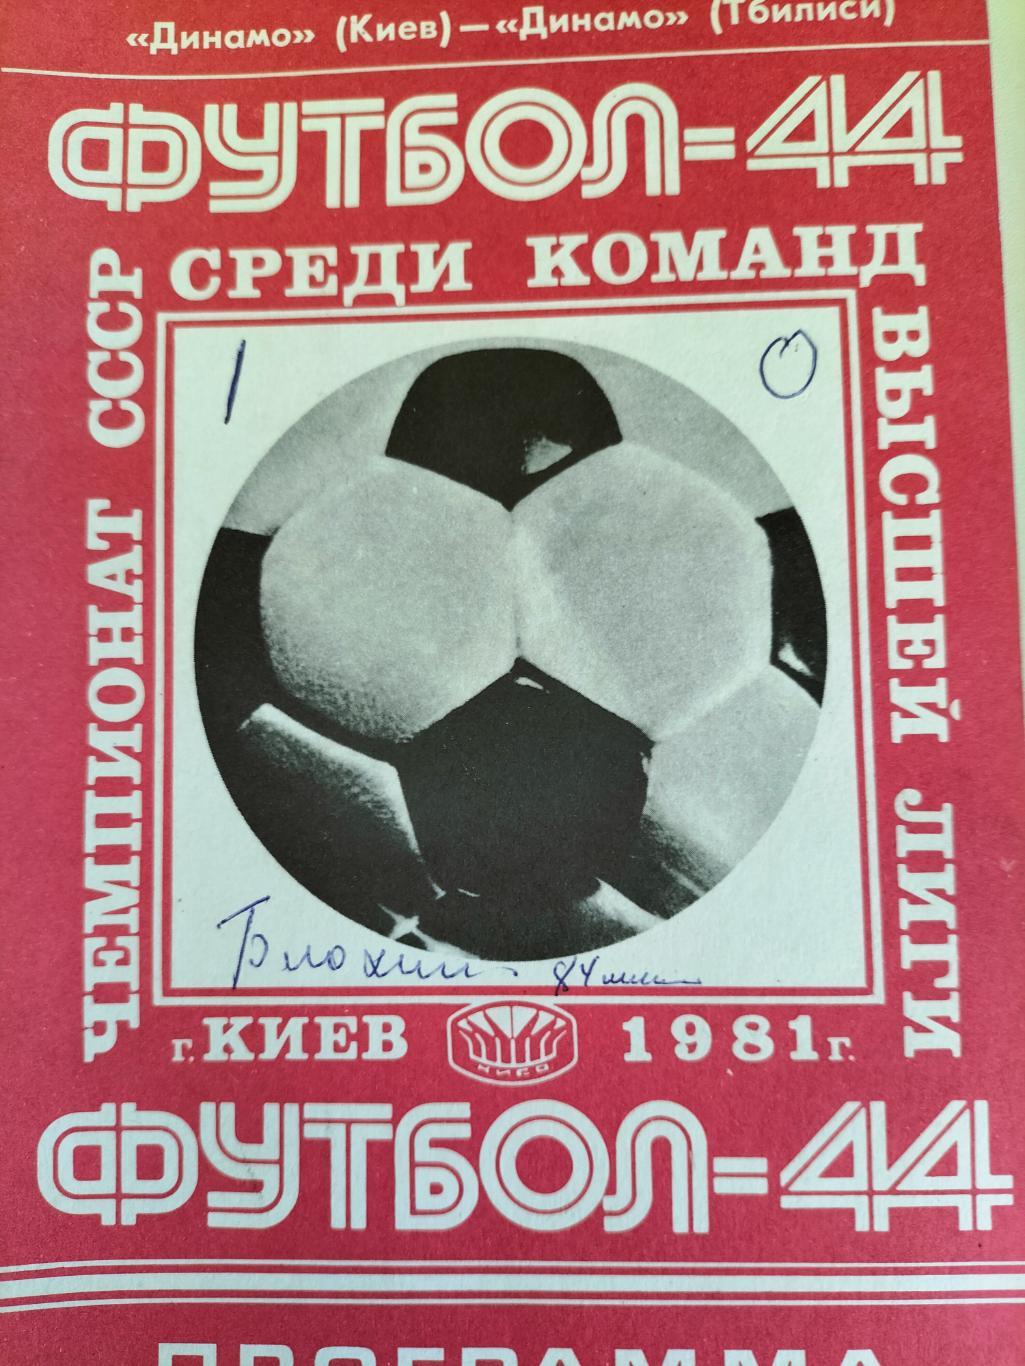 Динамо Киев - Динамо Тбилиси 1981